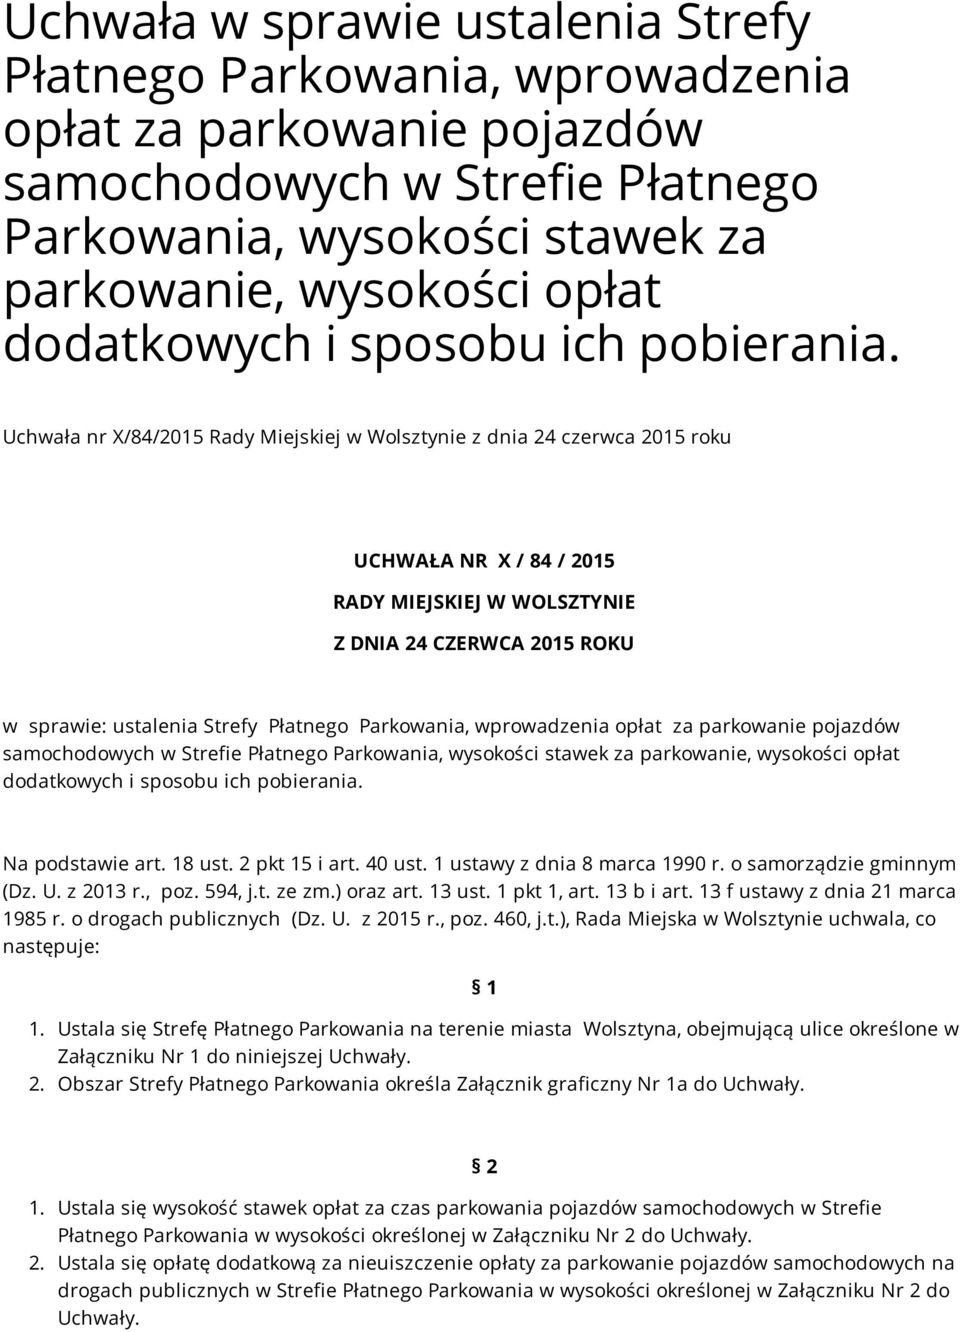 Uchwała nr X/84/2015 Rady Miejskiej w Wolsztynie z dnia 24 czerwca 2015 roku UCHWAŁA NR X / 84 / 2015 RADY MIEJSKIEJ W WOLSZTYNIE Z DNIA 24 CZERWCA 2015 ROKU w sprawie: ustalenia Strefy Płatnego